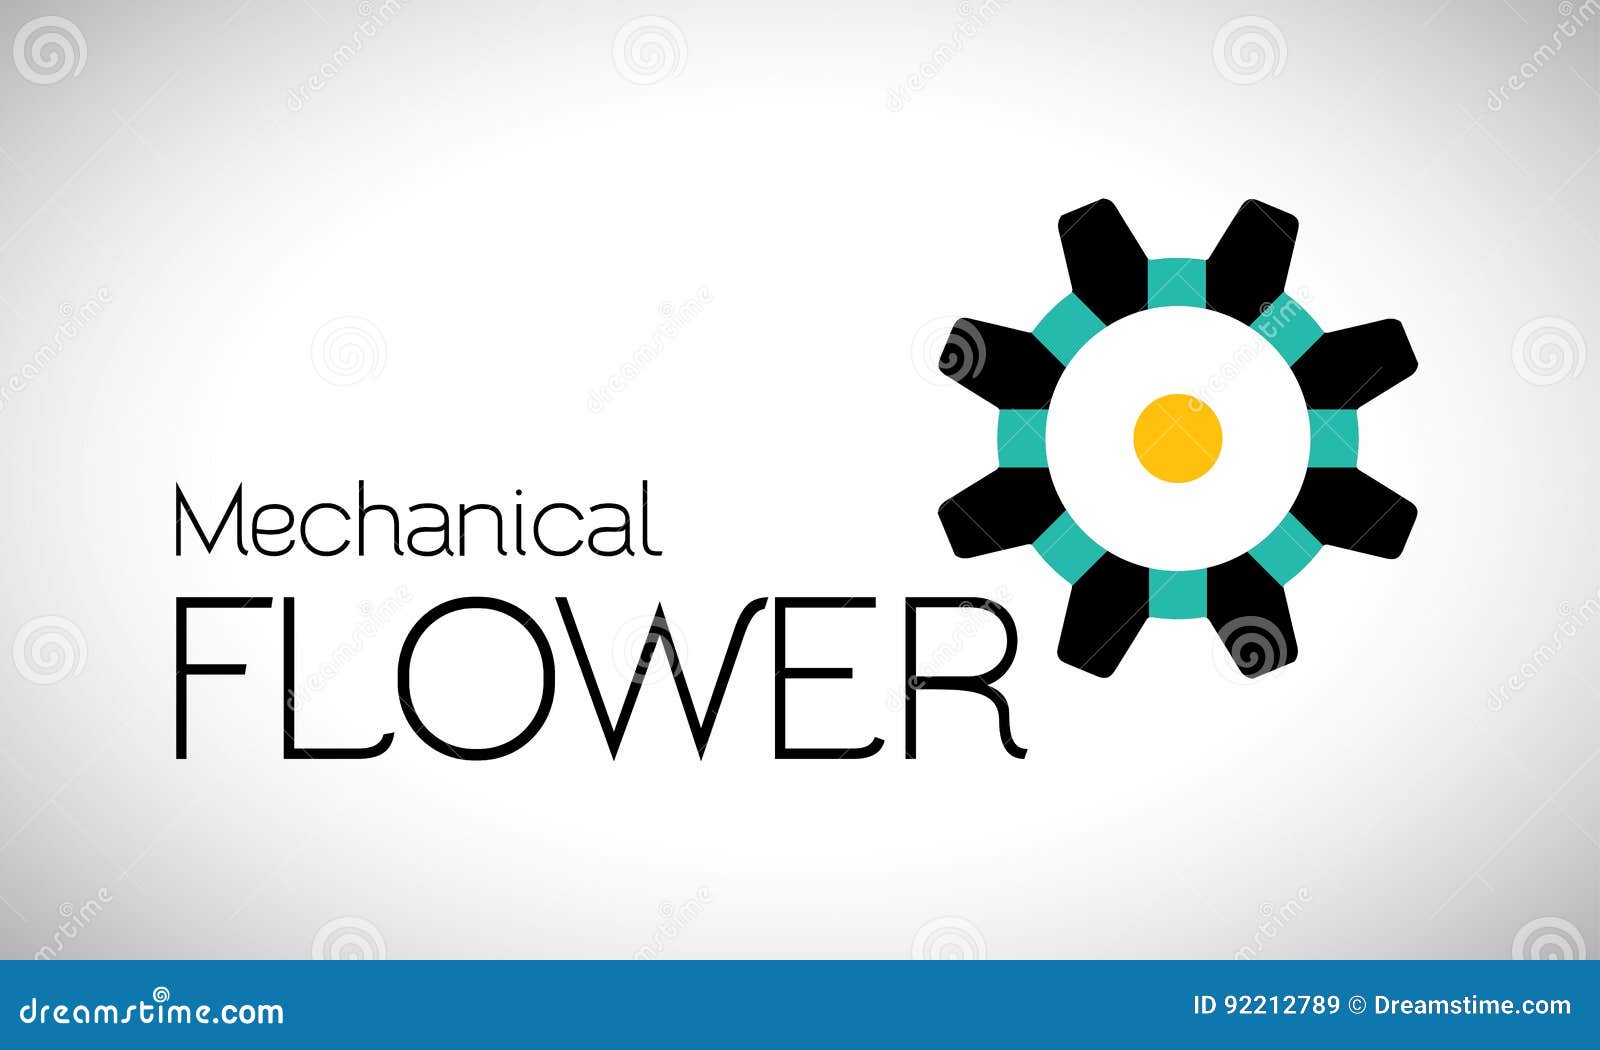 mechanical flower logo